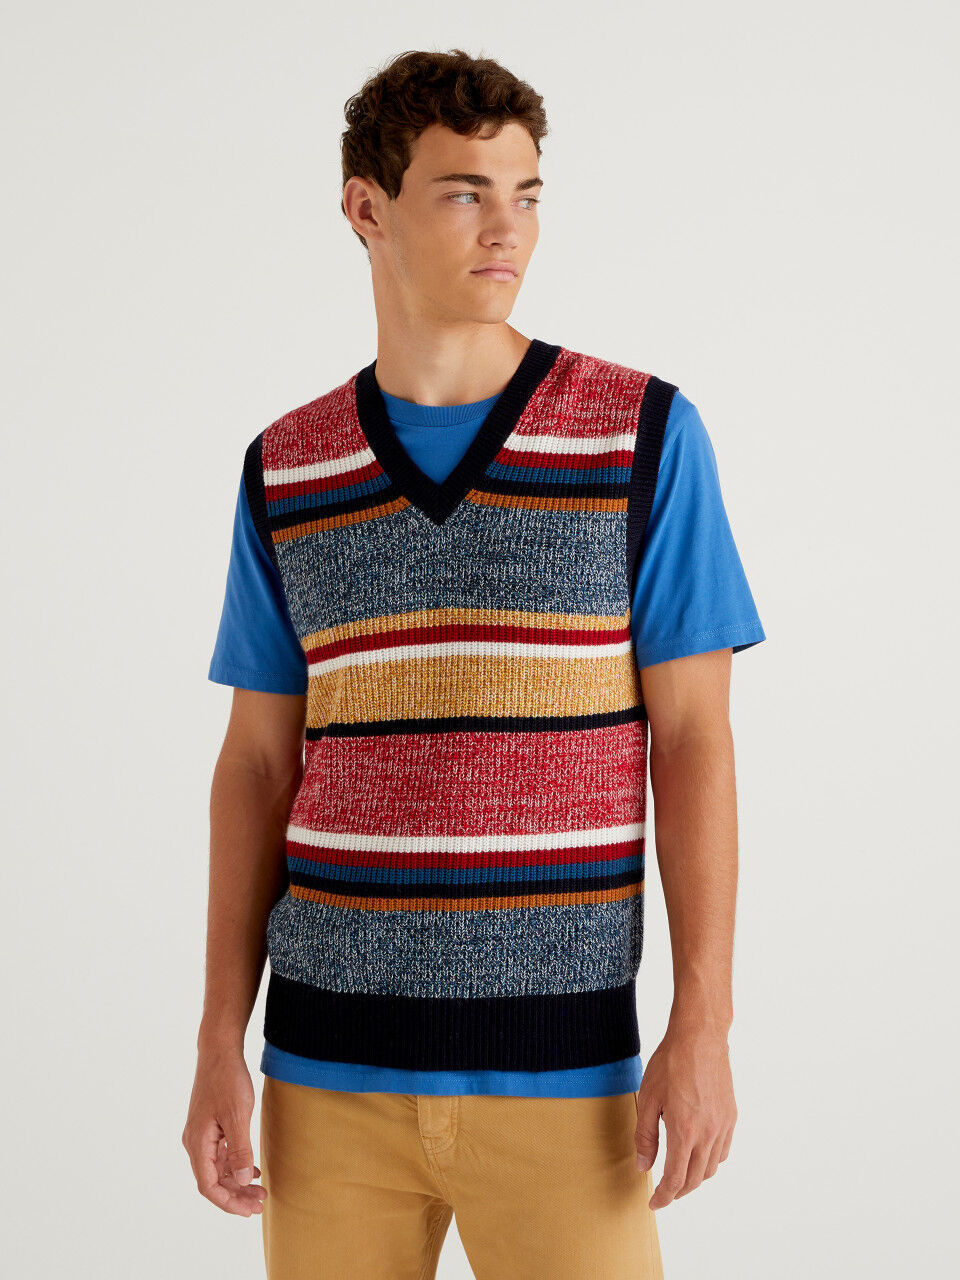 Cashmere Boutique Mens 100% Pure Cashmere Vest Sweater 6 Colors, Sizes: S/M/L/XL 